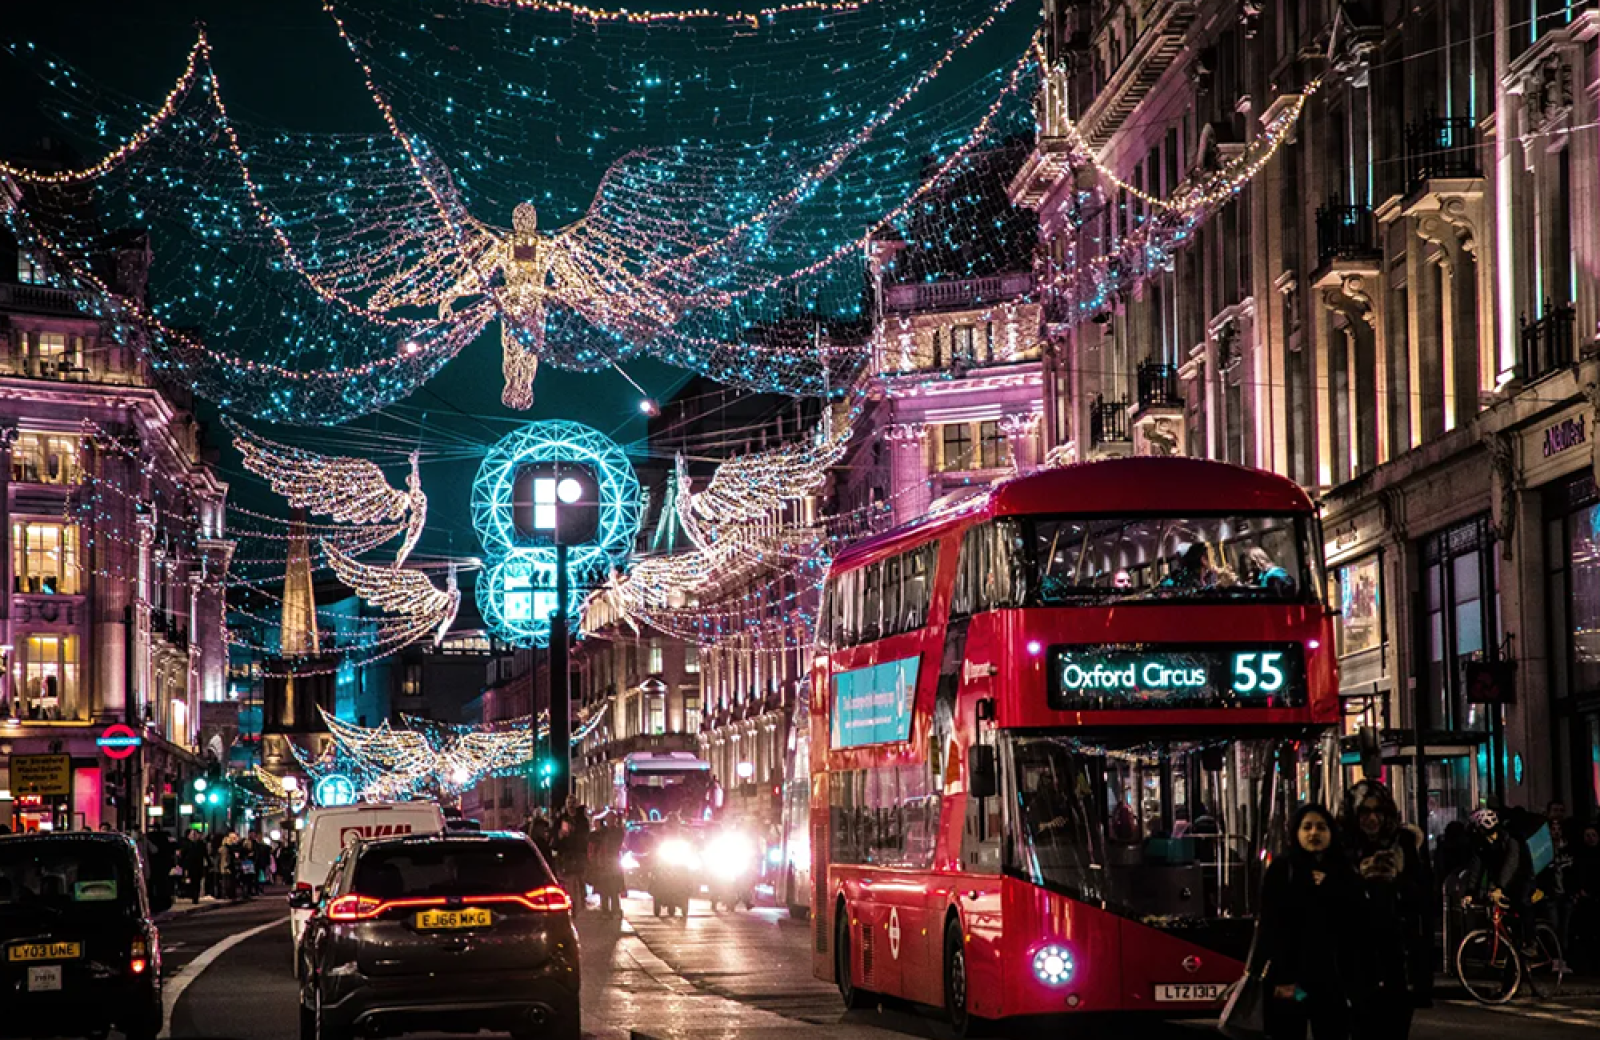 London at Christmas